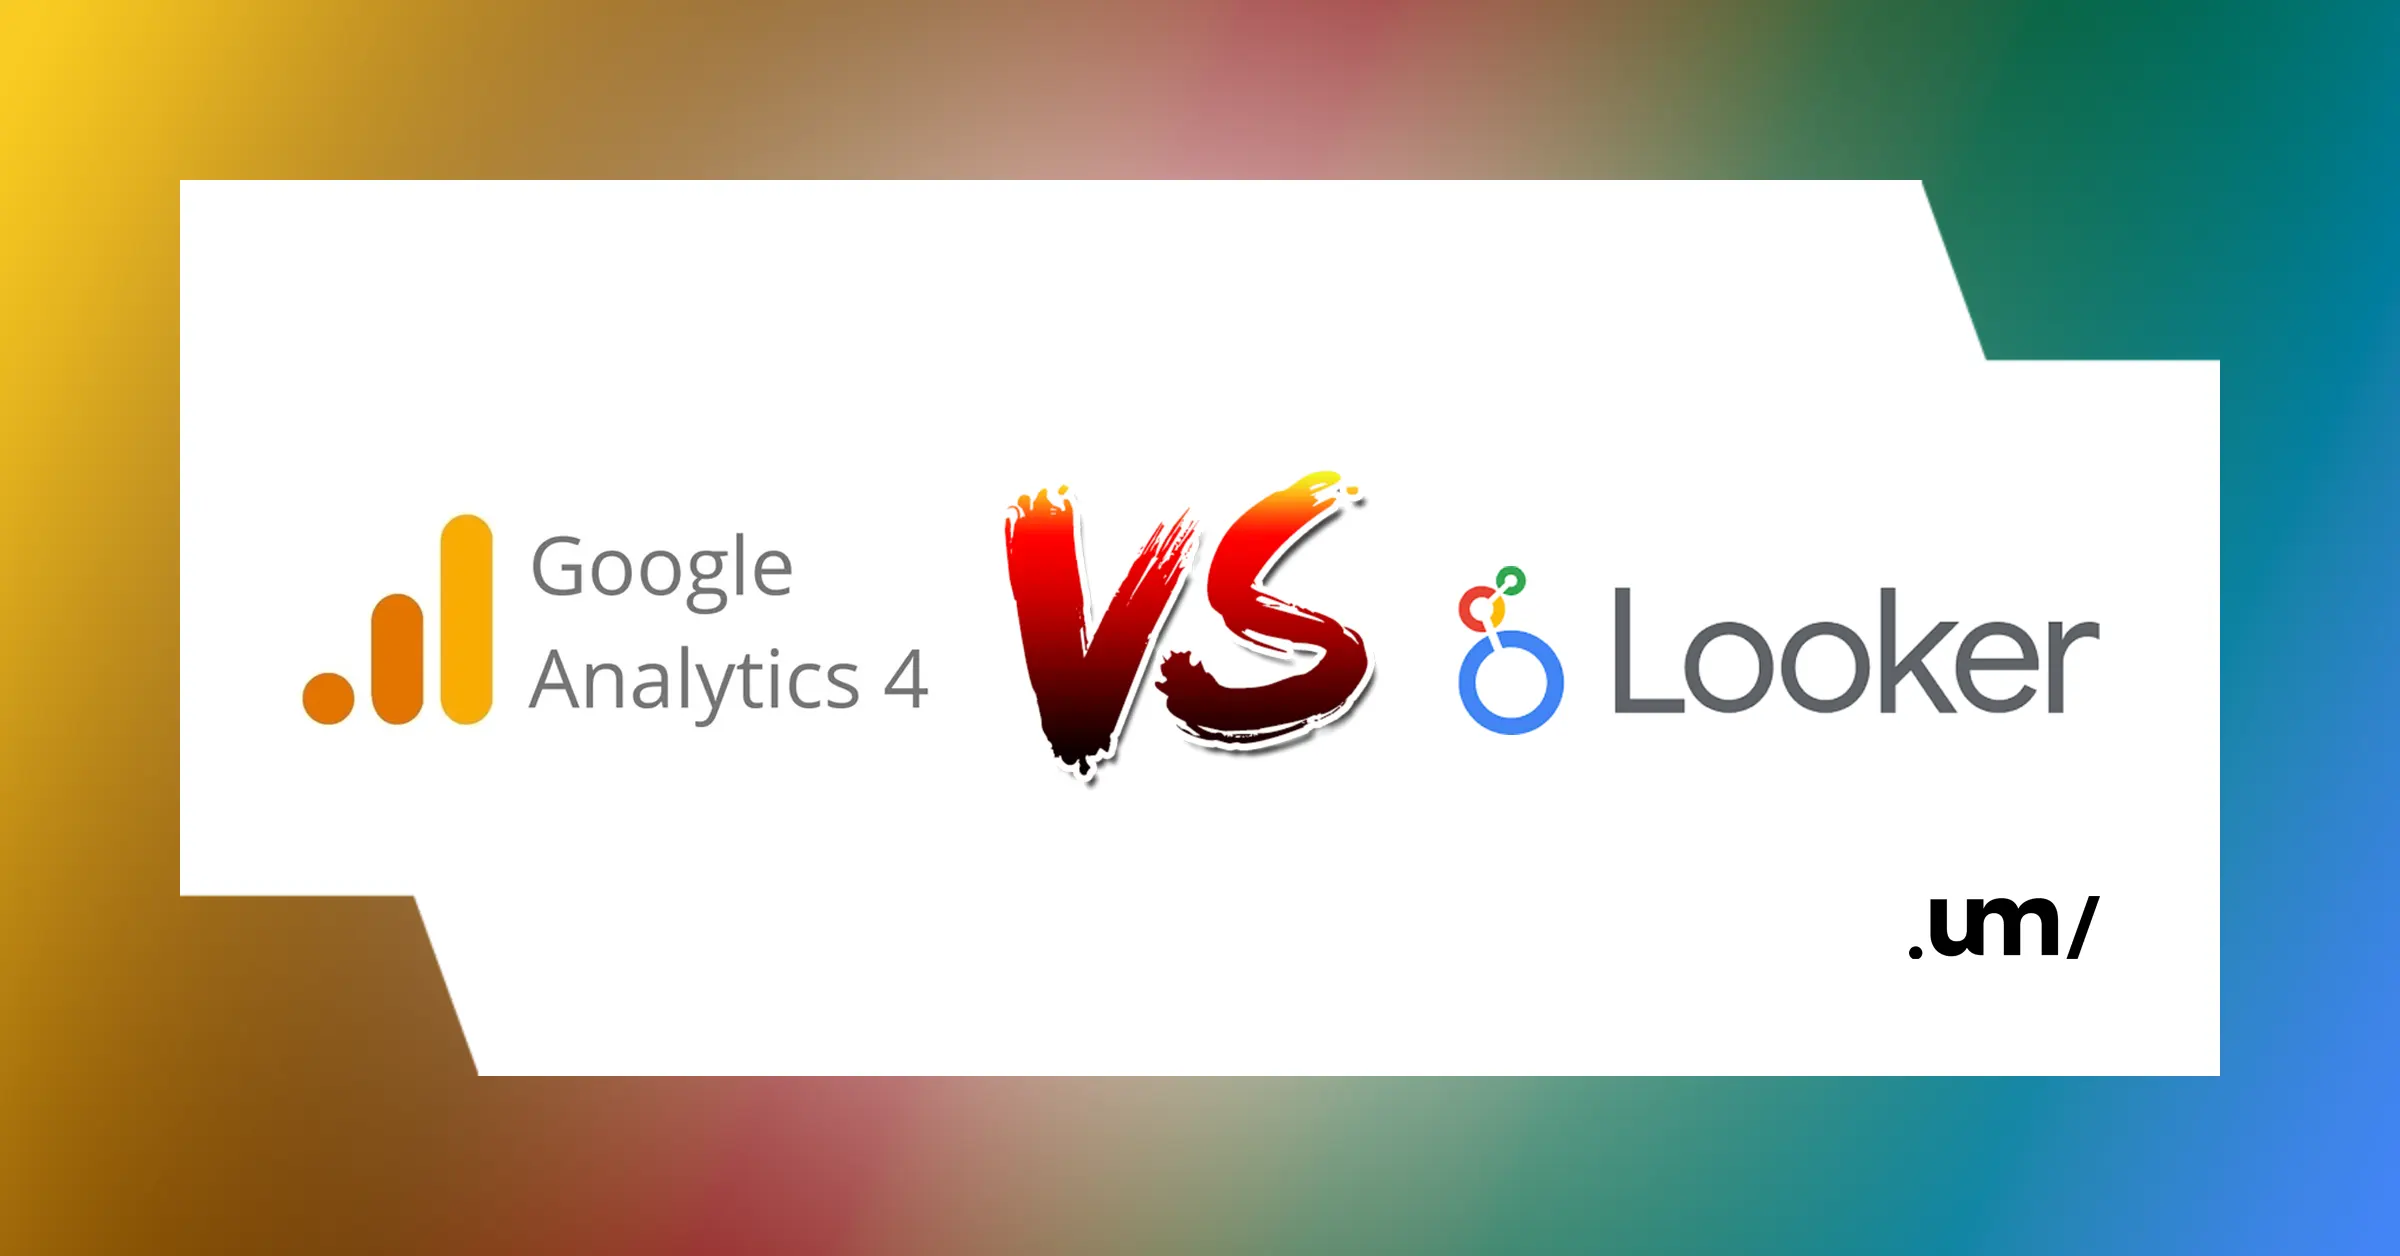 Як розв’язати проблему квот API Google Analytics 4 у Looker Studio?